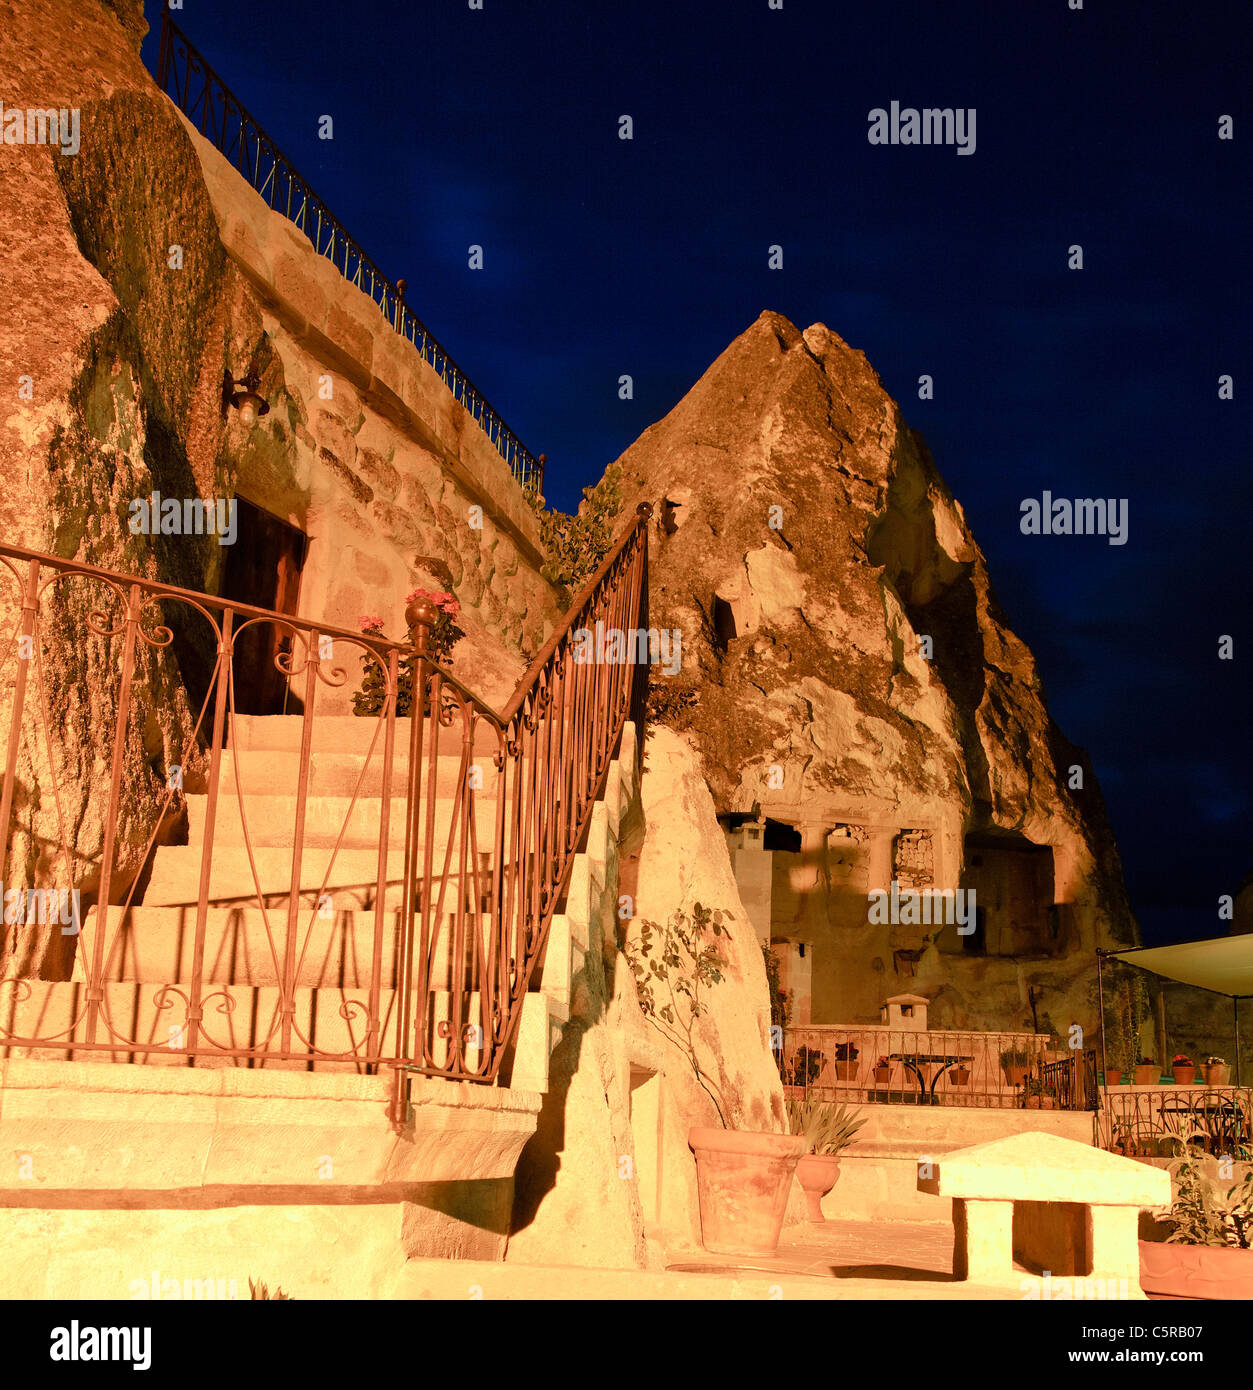 Peldaños y pasamanos de una casa cueva en Goreme, formato cuadrado, escena nocturna, detalle arquitectónico de escalera exterior Foto de stock